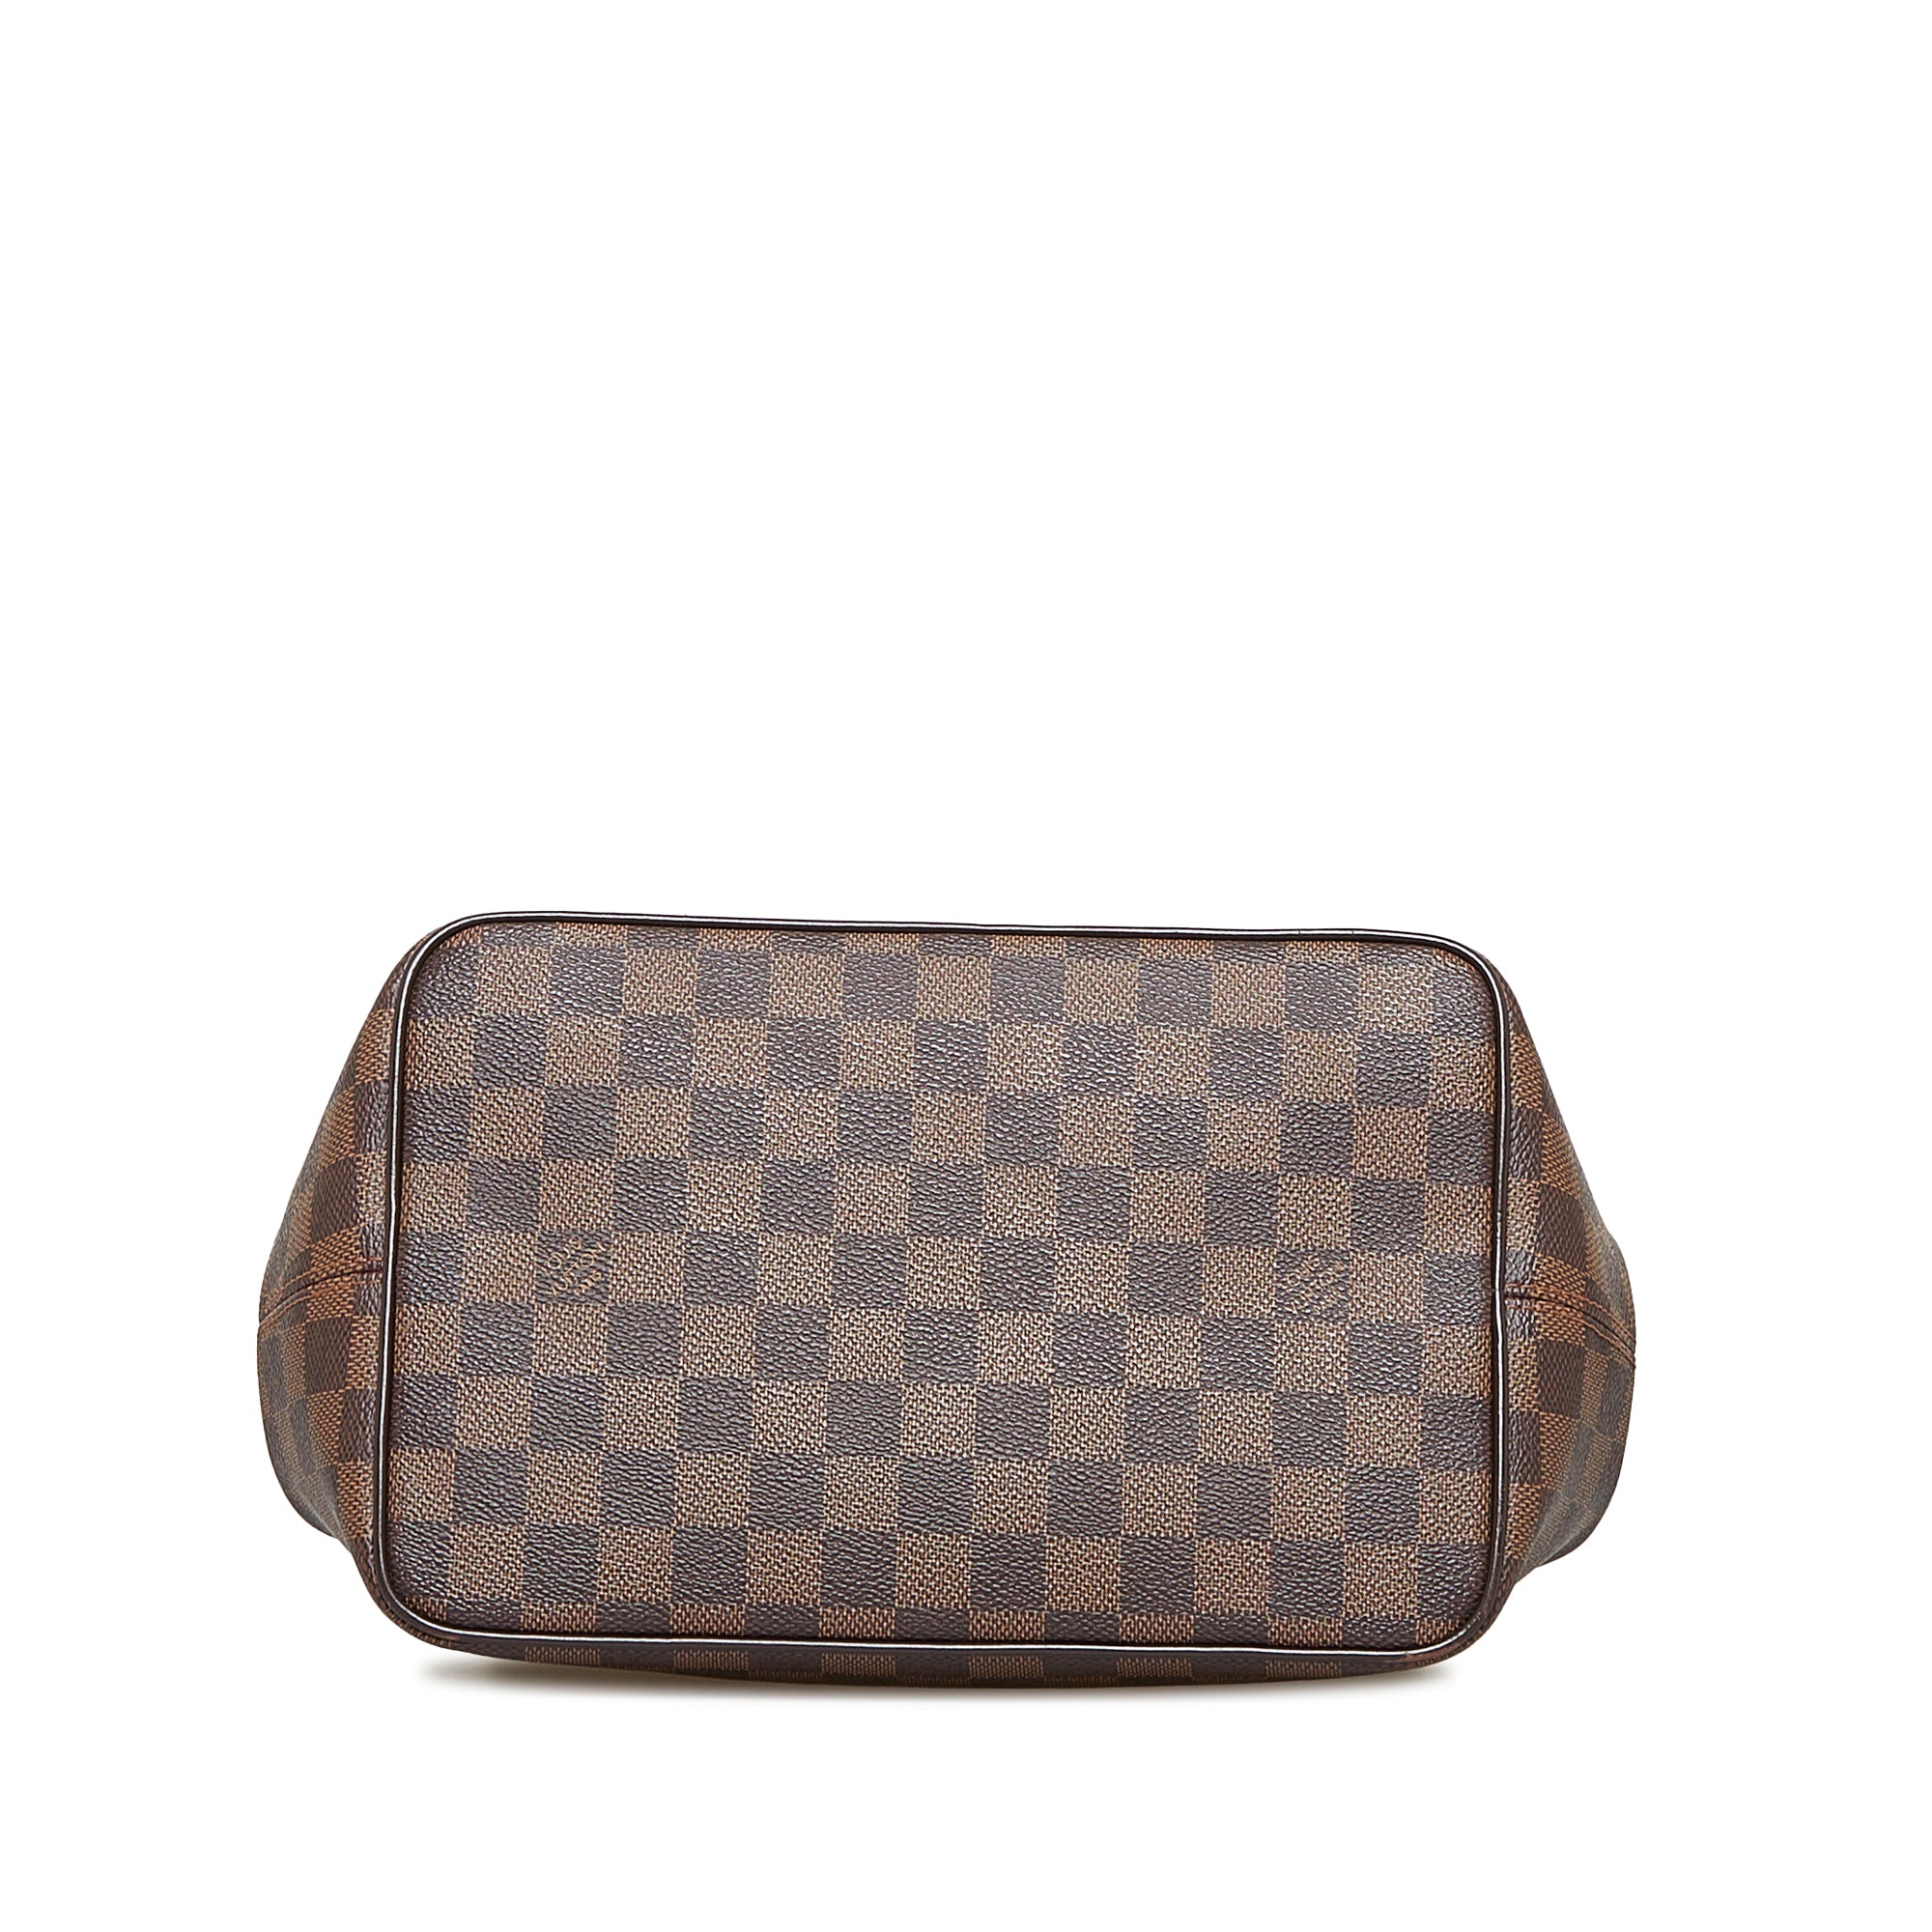 Louis Vuitton Bergamo Handbag 310758, Extension-fmedShops